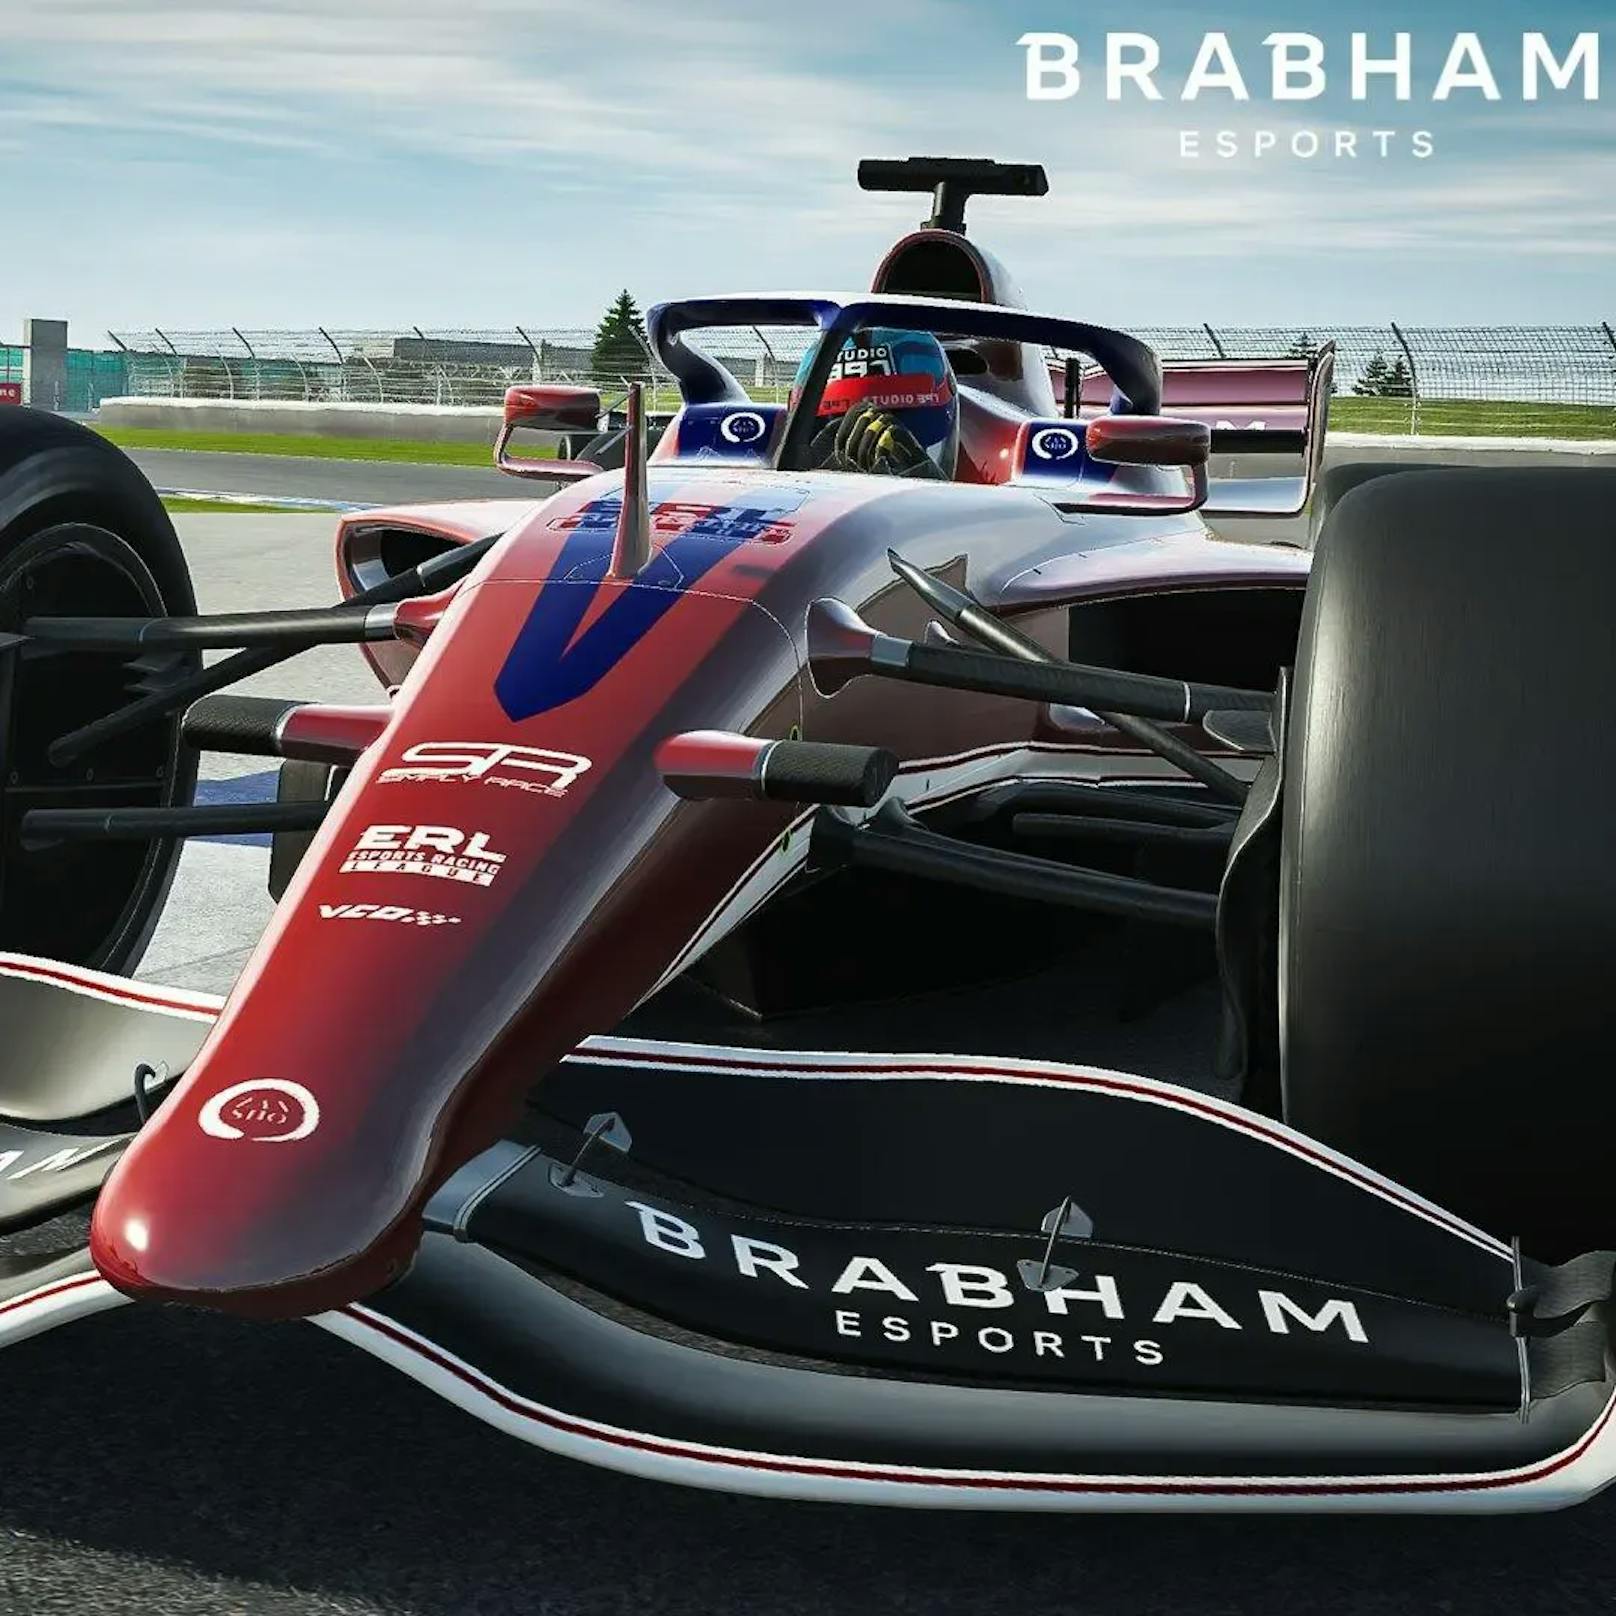 Das legendäre Formel-1-Team Brabham ist zurück. Sie starten eine E-Sport-Karriere und wollen in "iRacing", "rFactor 2" oder "Assetto Corsa Competizione" die Konkurrenz hinter sich lassen.